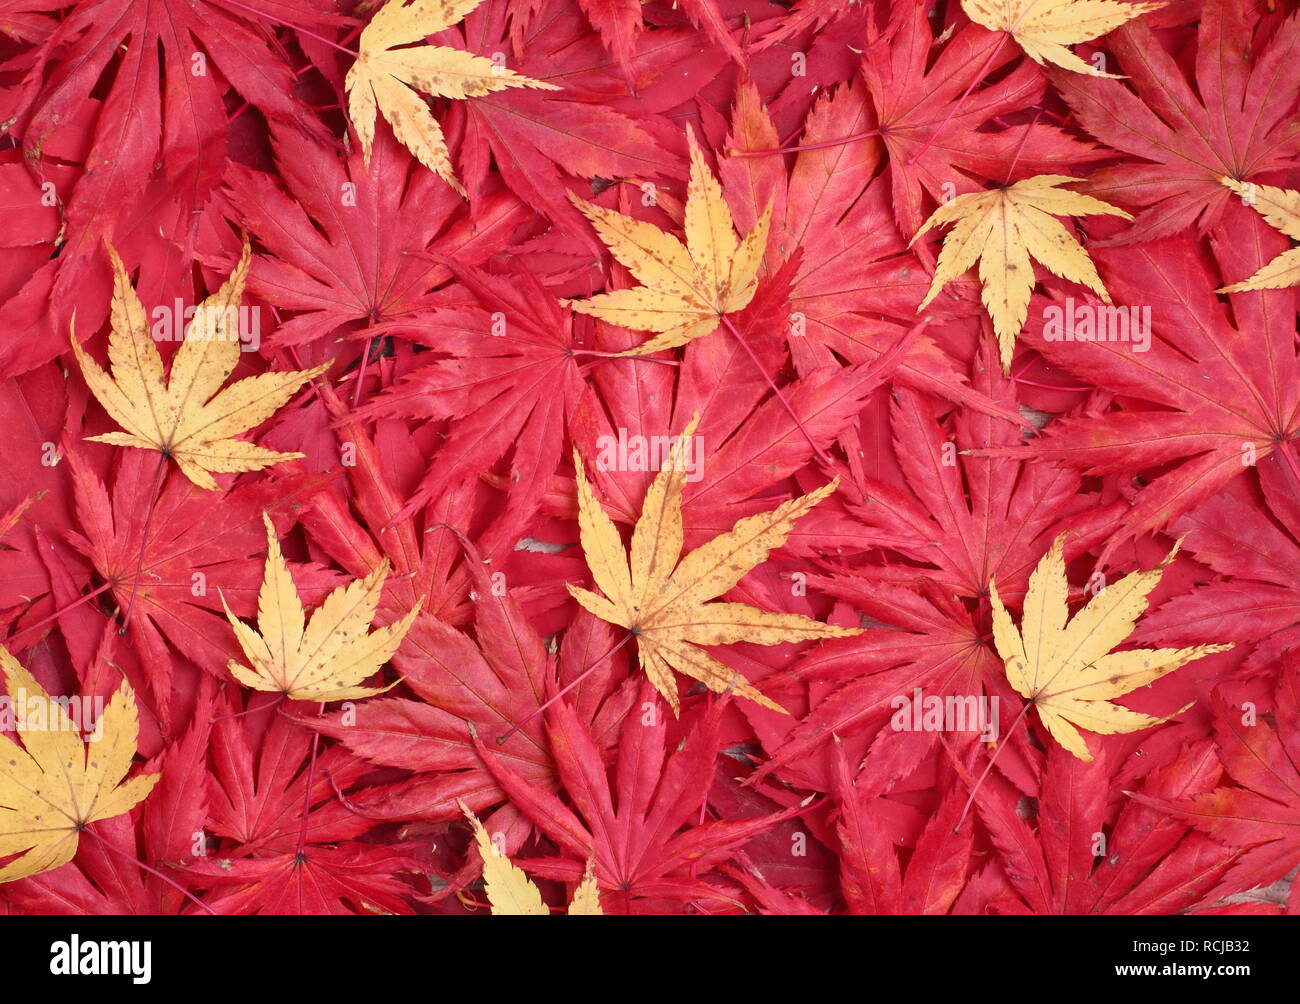 Acer palmatum. Autumn foliage of  acers. Pictured: Red 'Osakazuki', 'Matsukaze', ''Trompenburg' and yellow 'Sango kaku' Stock Photo